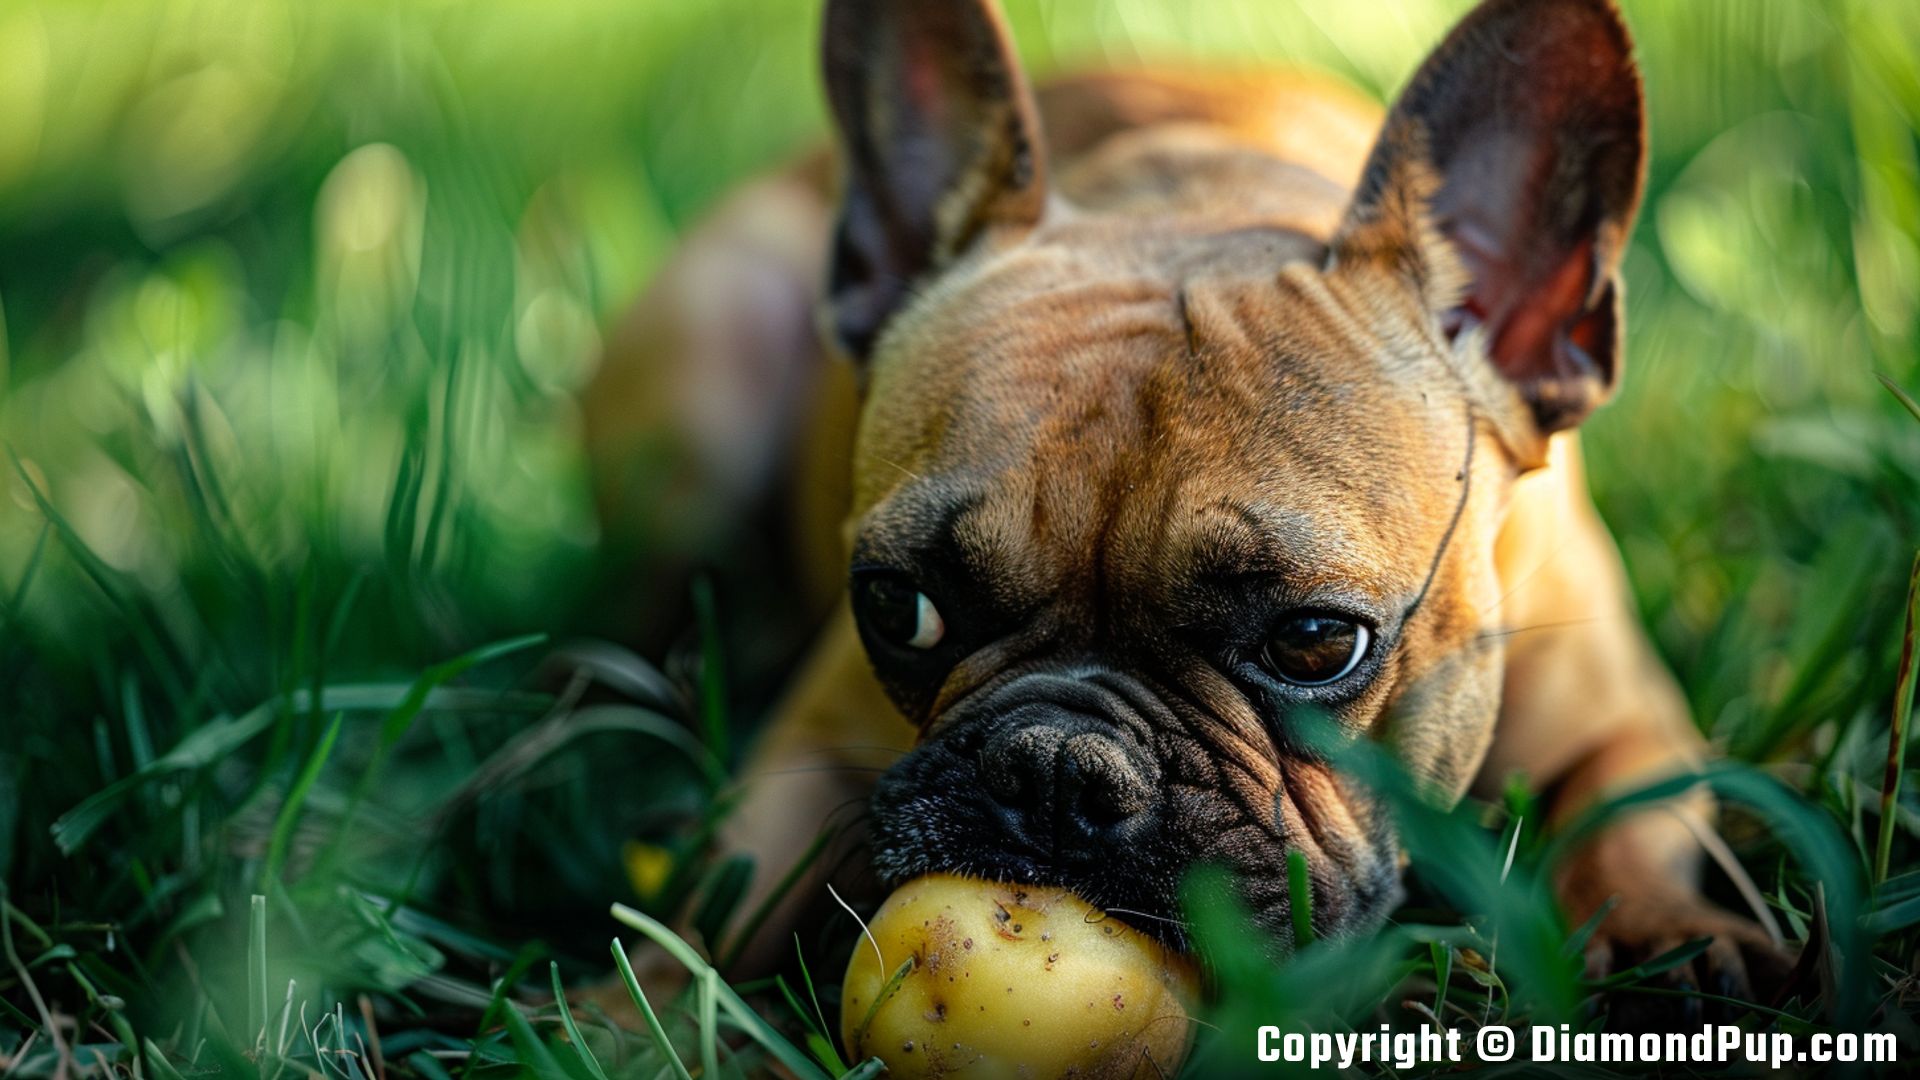 Image of an Adorable French Bulldog Eating Potato